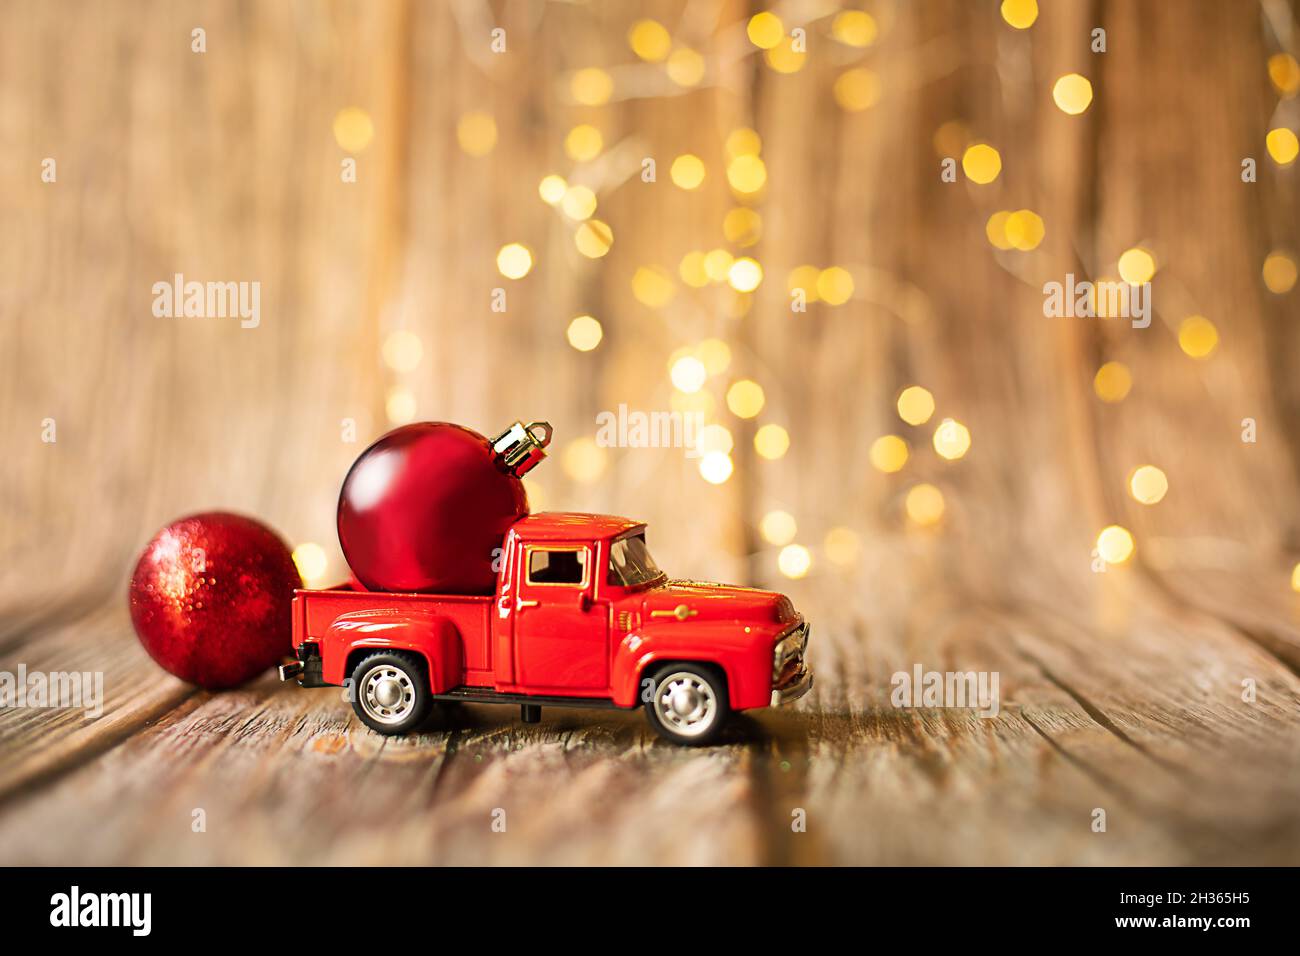 Miniatur-Auto auf Holz Hintergrund mit weihnachtslicht, Urlaub Spielzeug  Dekoration. Konzept - Neujahrsverkauf, Weihnachtseinkäufe. Horizontaler  Motivphot Stockfotografie - Alamy